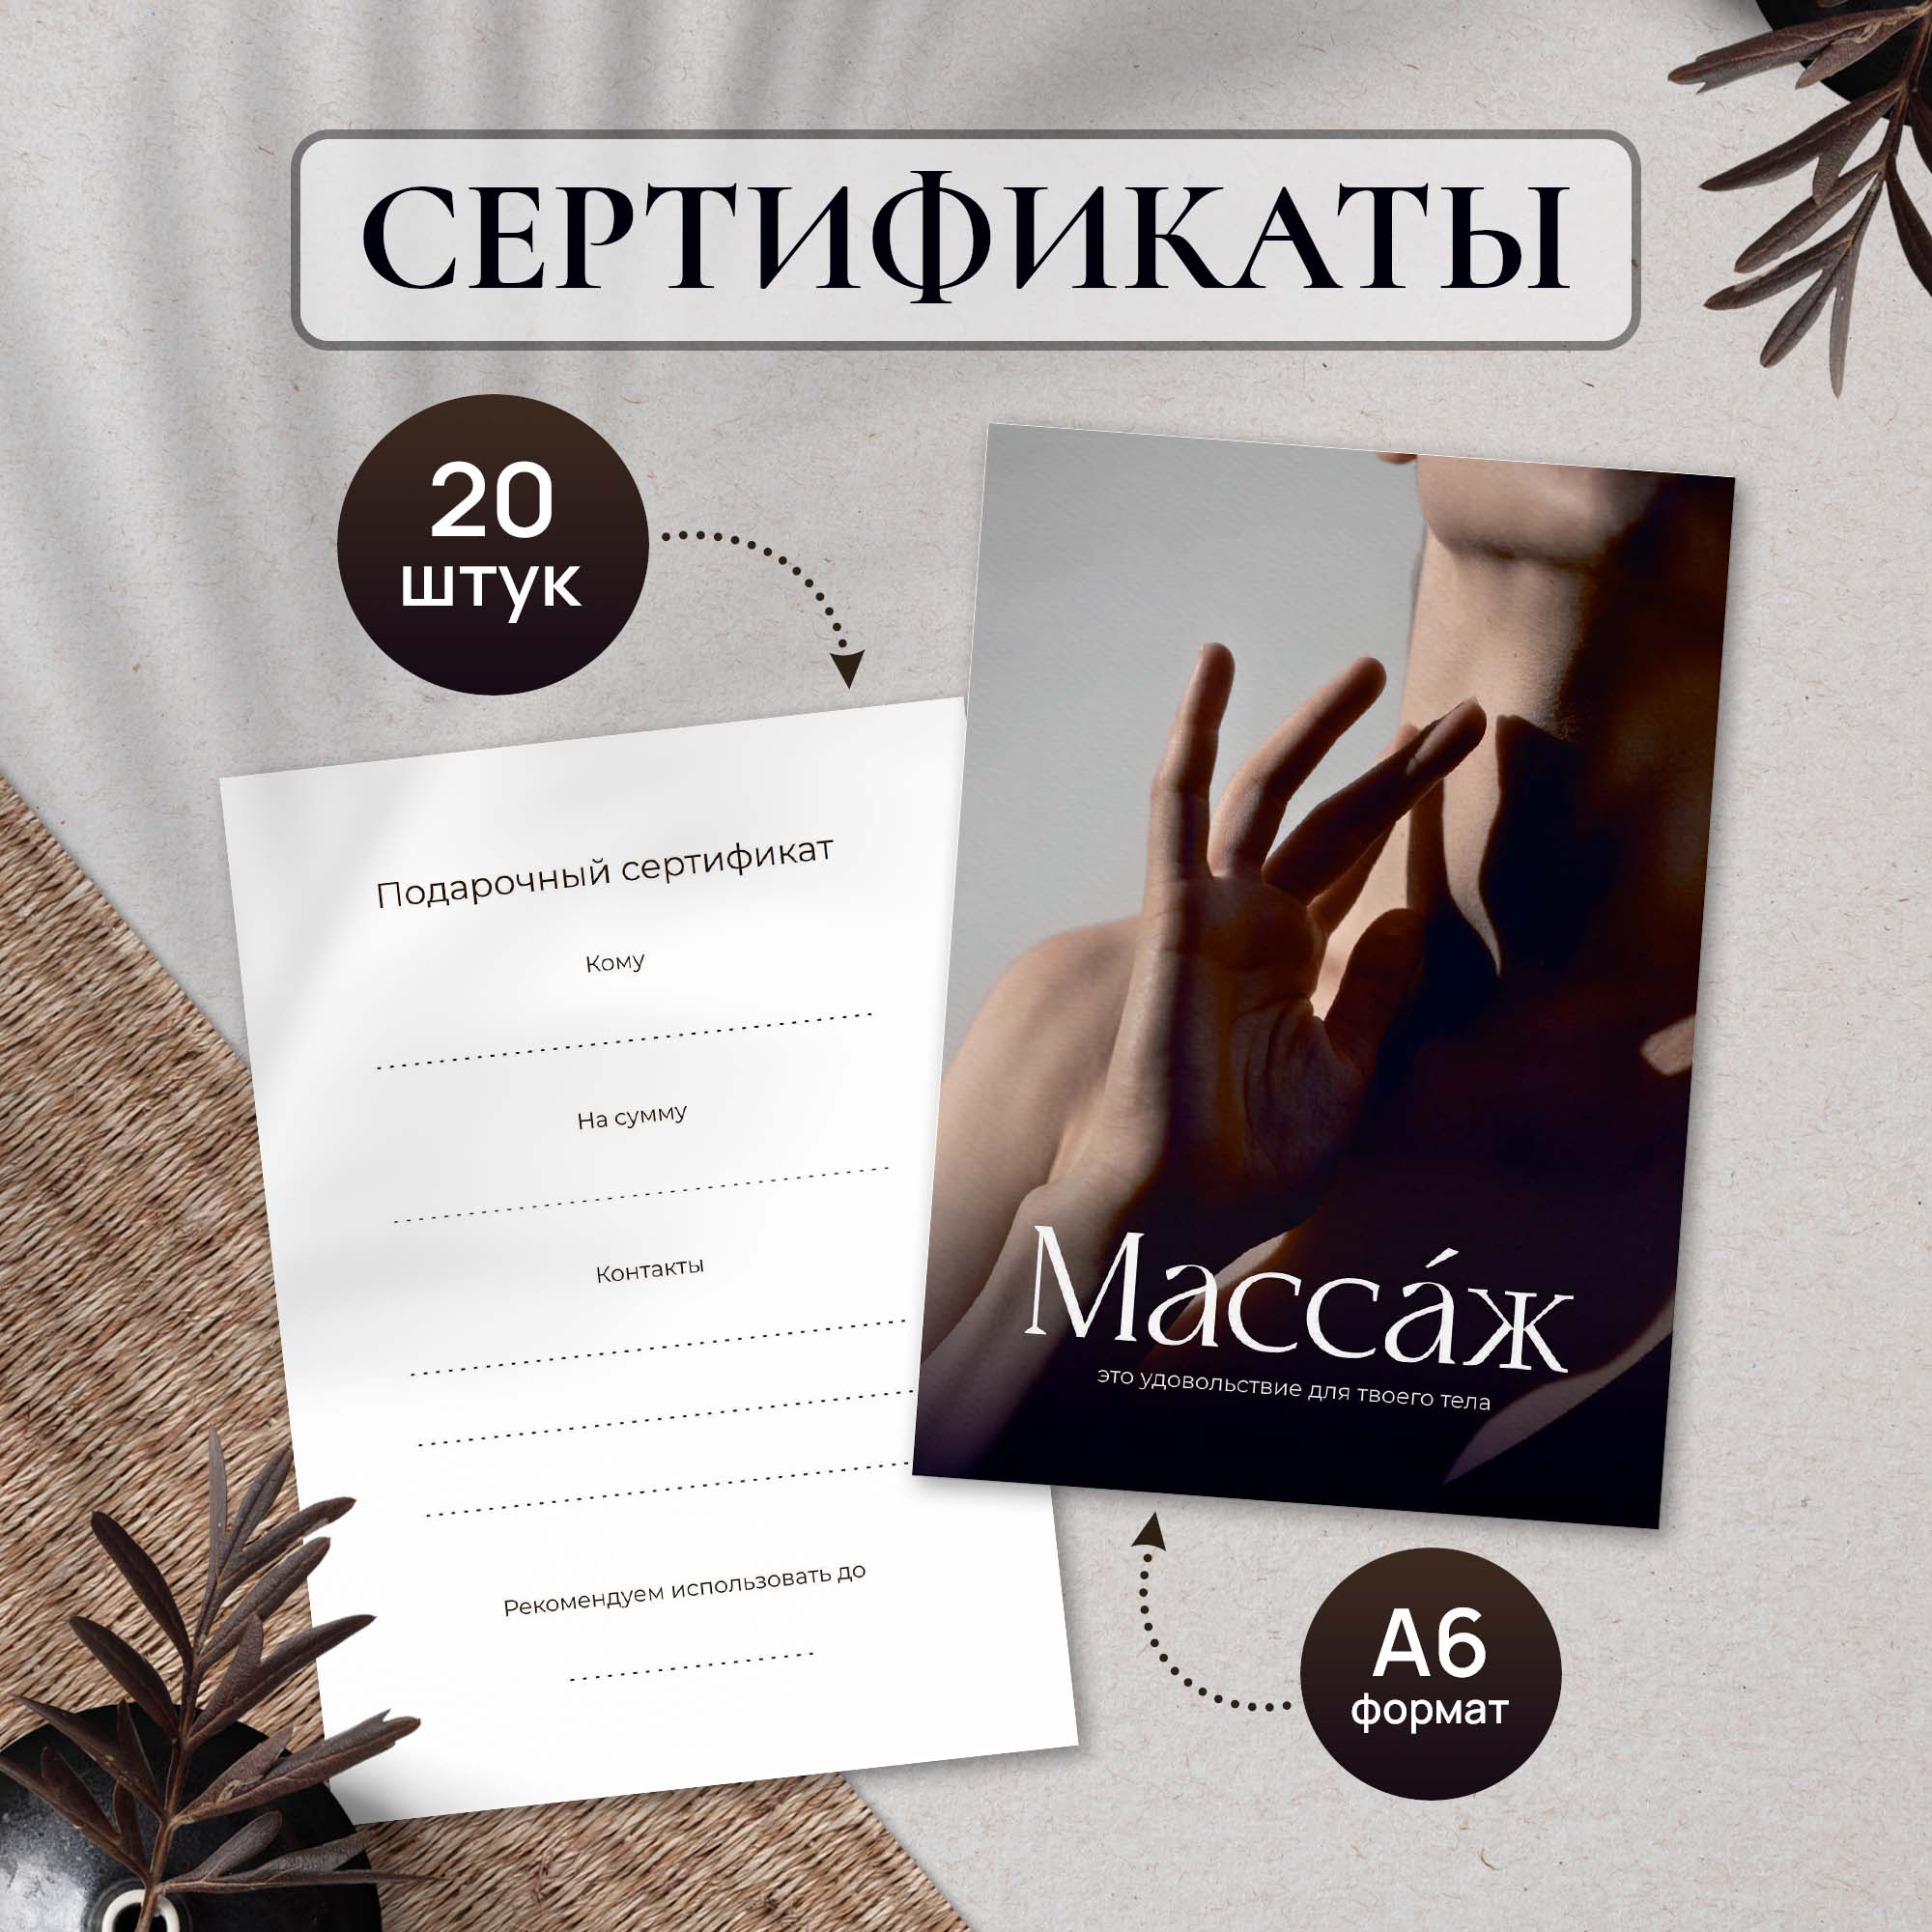 Сертификат Выручалкин, Массаж (рука), 20 шт, А6